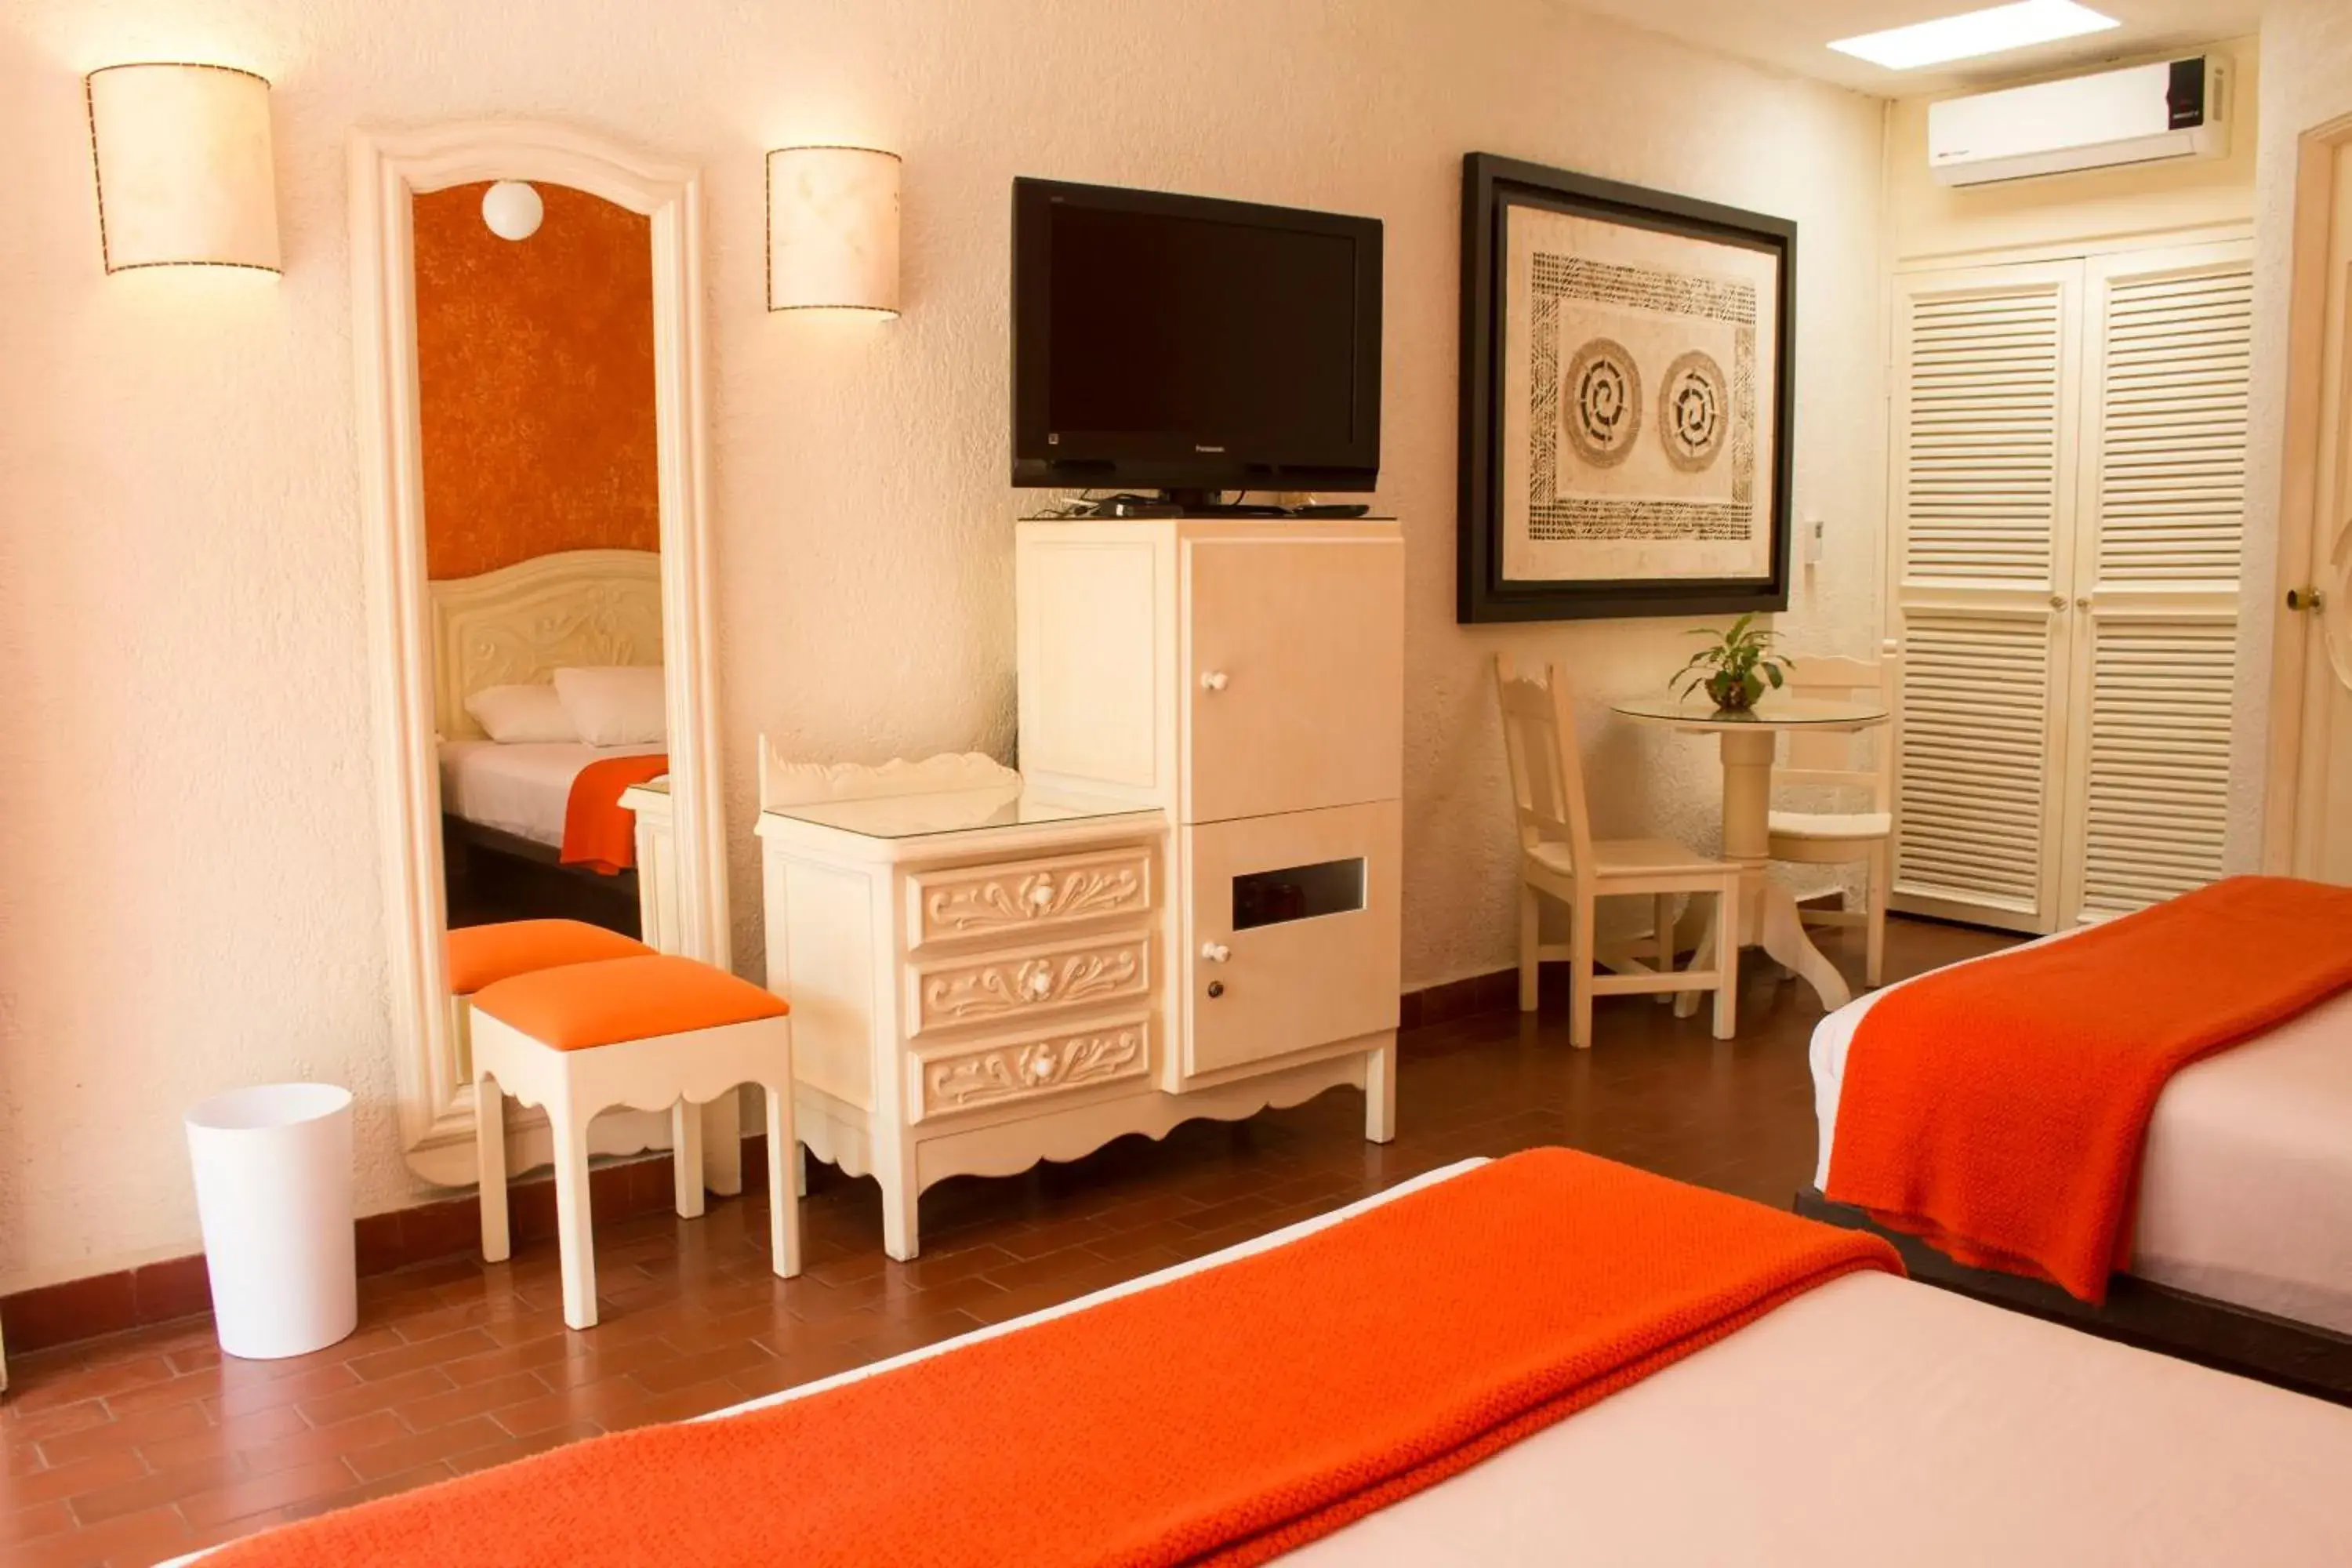 Bedroom, TV/Entertainment Center in Hotel Villa del Conquistador